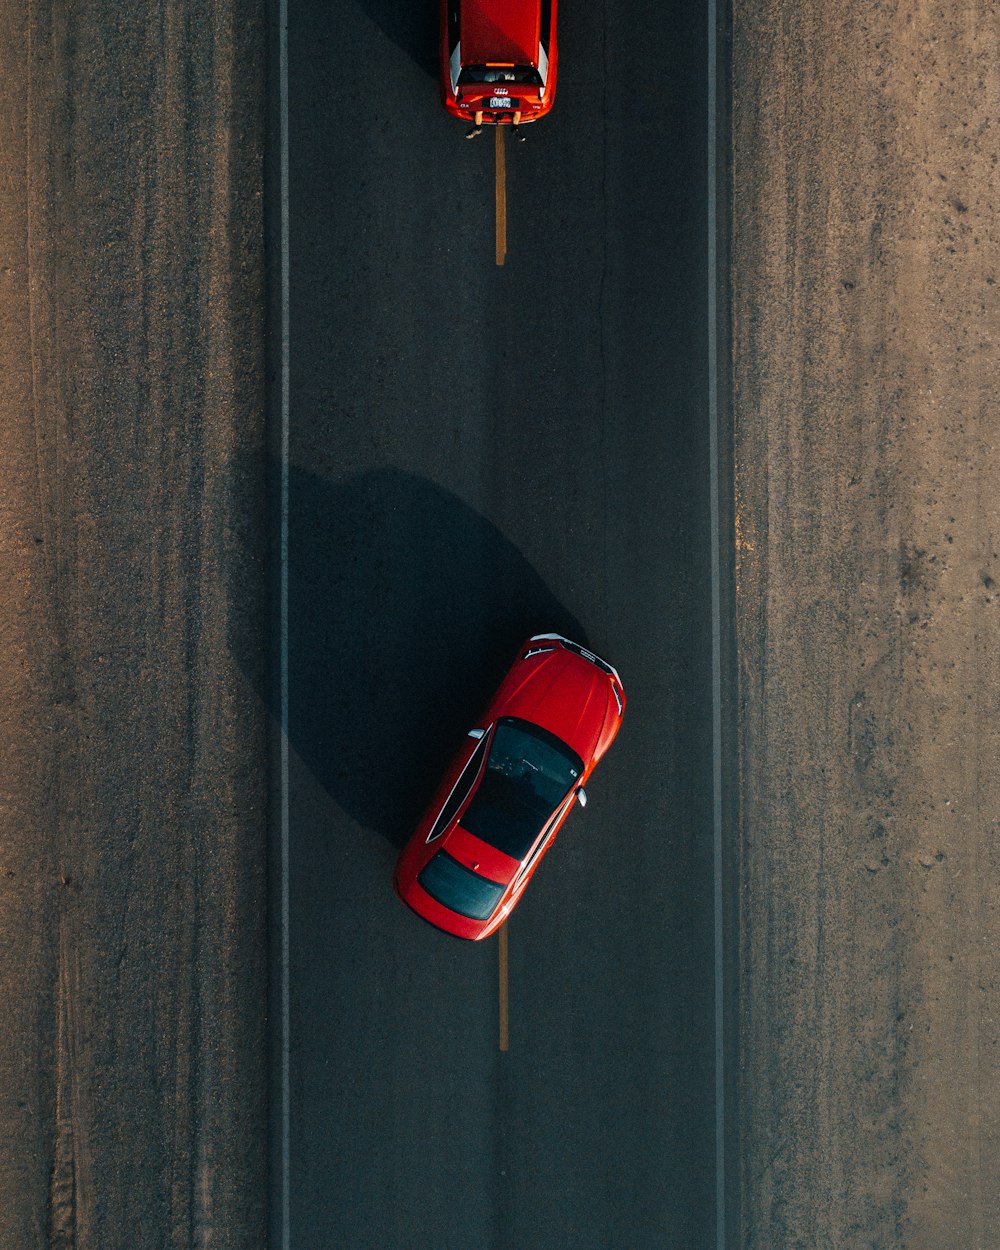 Dos vehículos rojos en la carretera durante el día